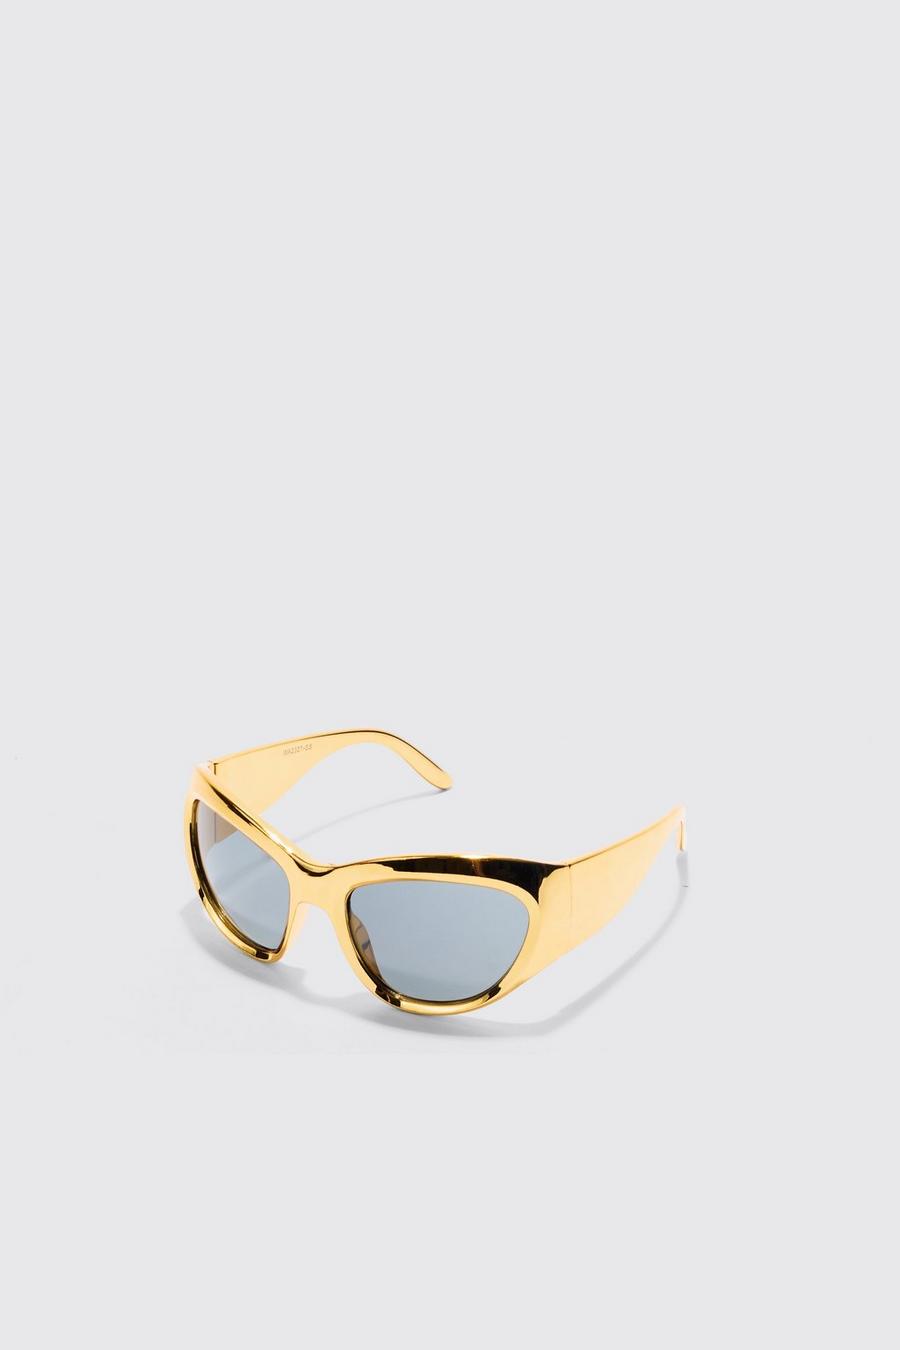 Gafas de sol con montura metálica y lentes protectoras, Gold